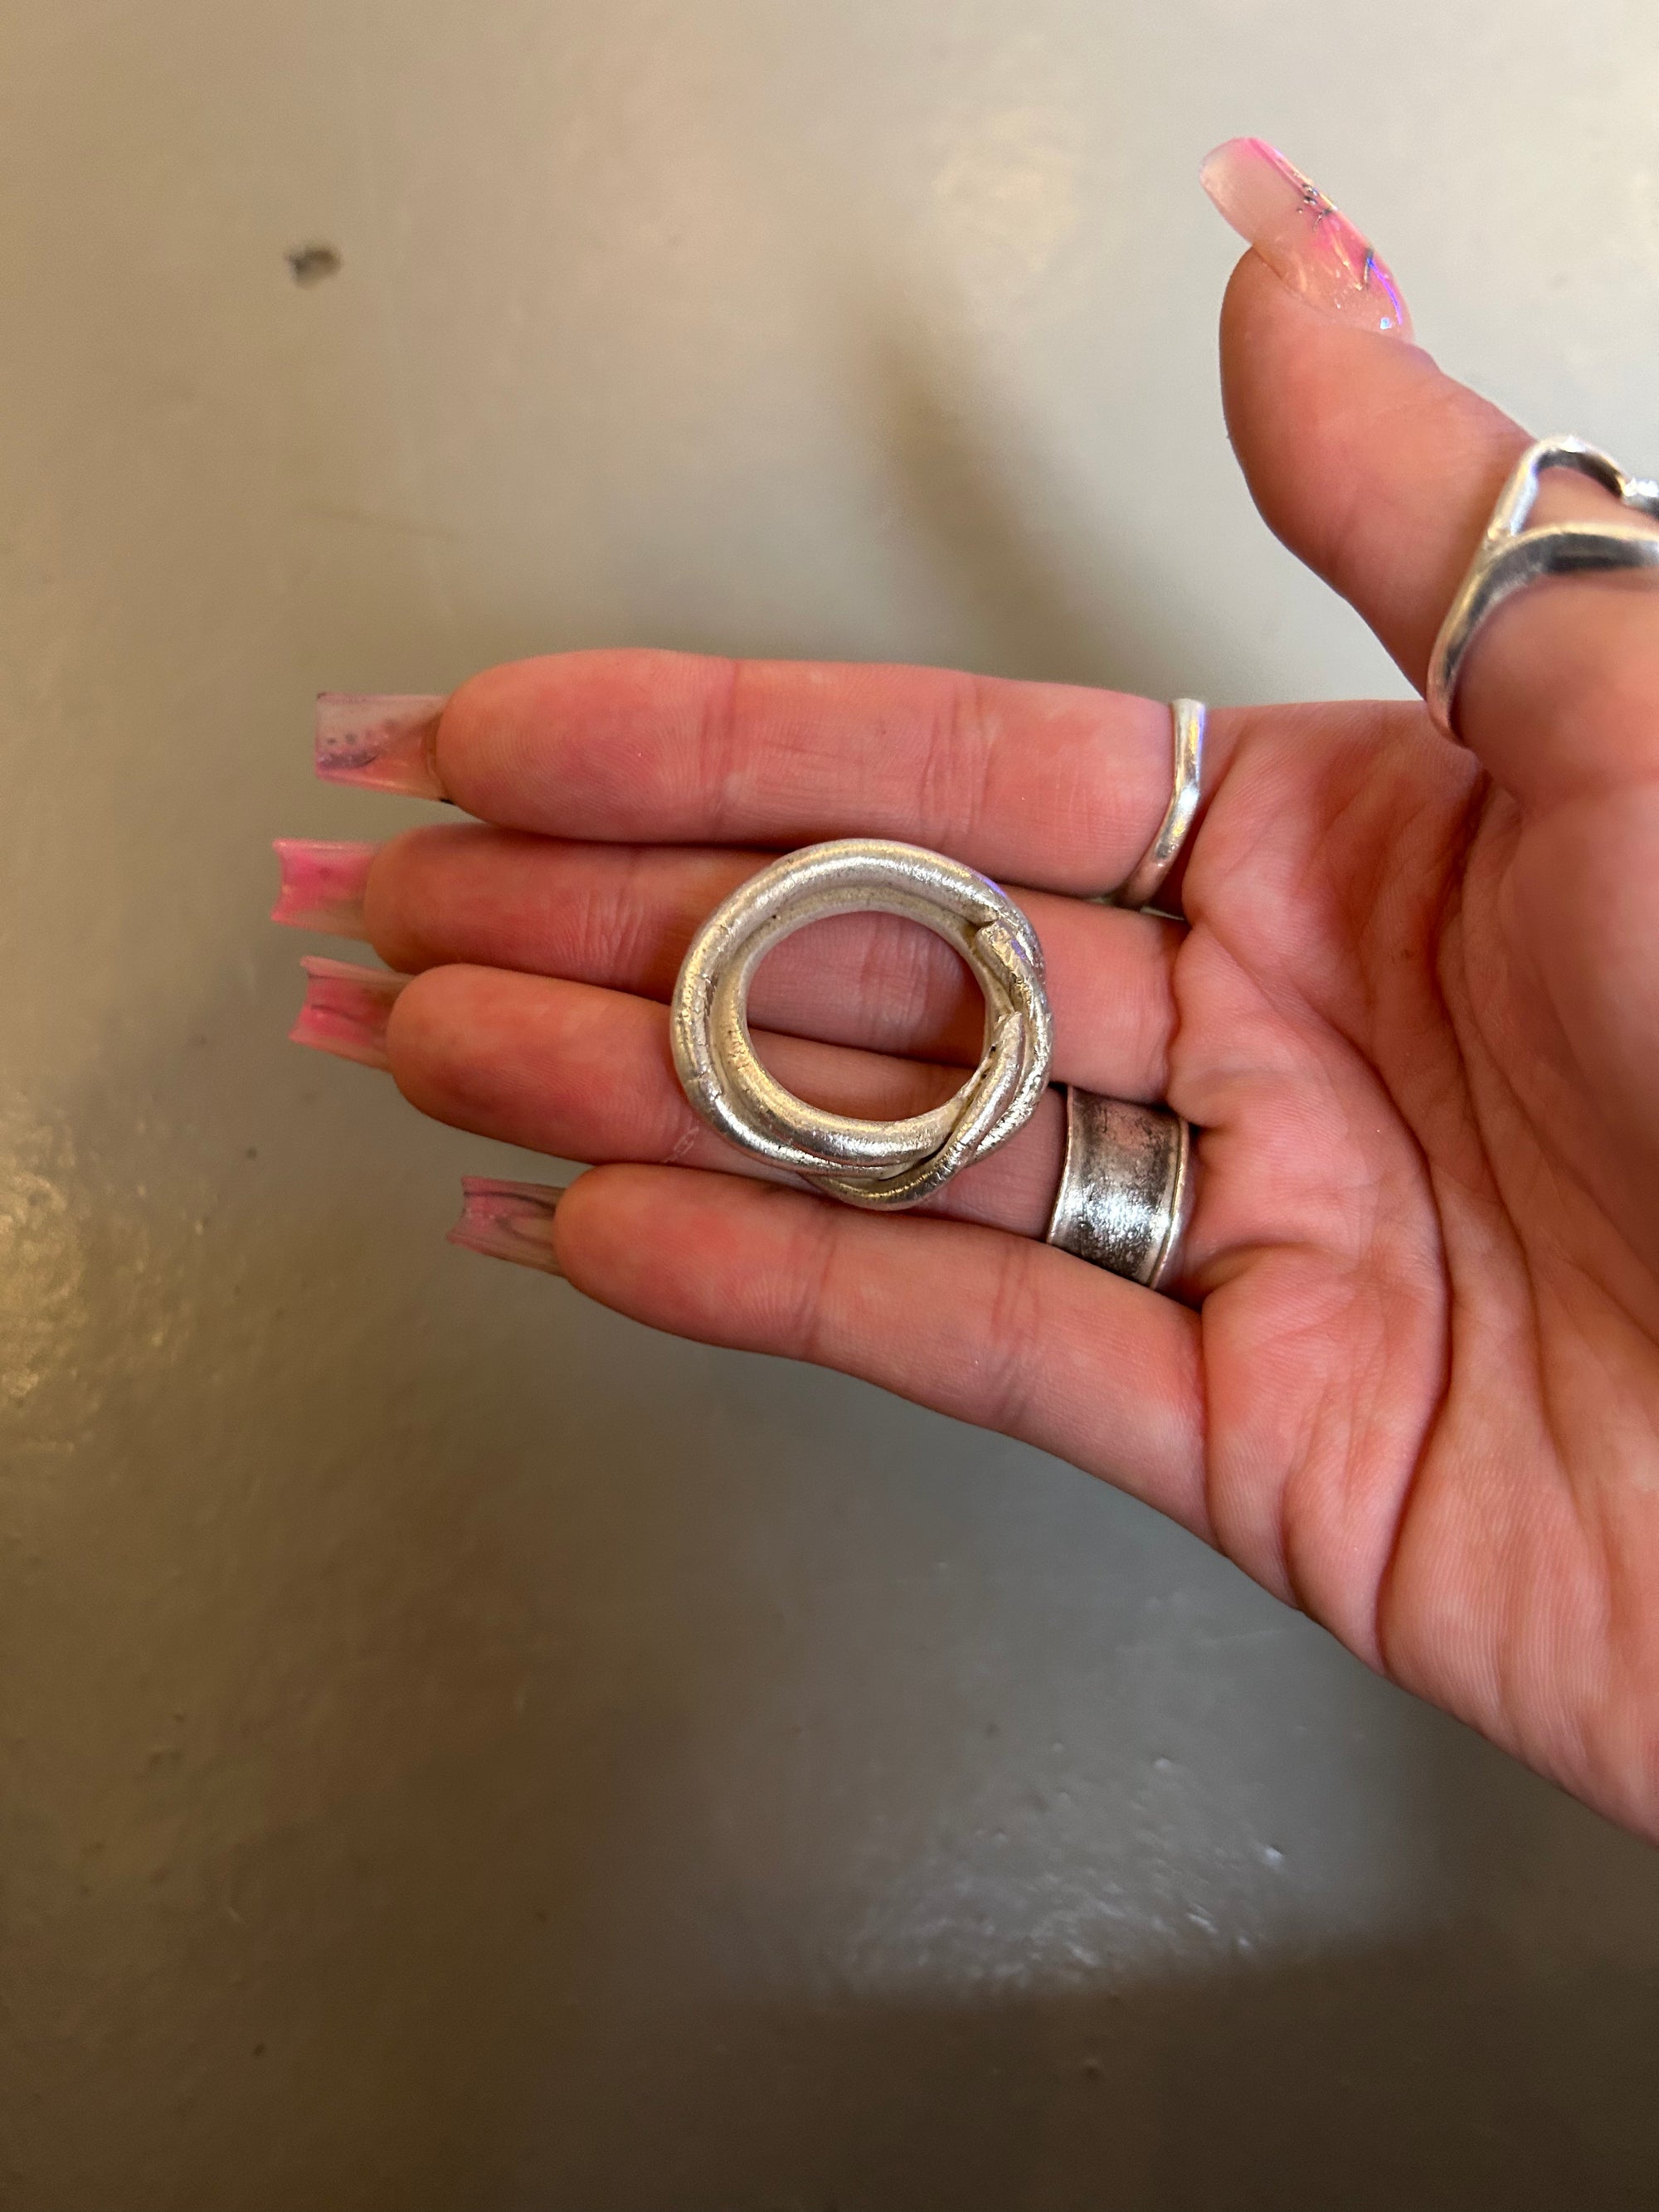 Produktbild von ringsbyclausen ring „Twisted“ auf grauem boden 